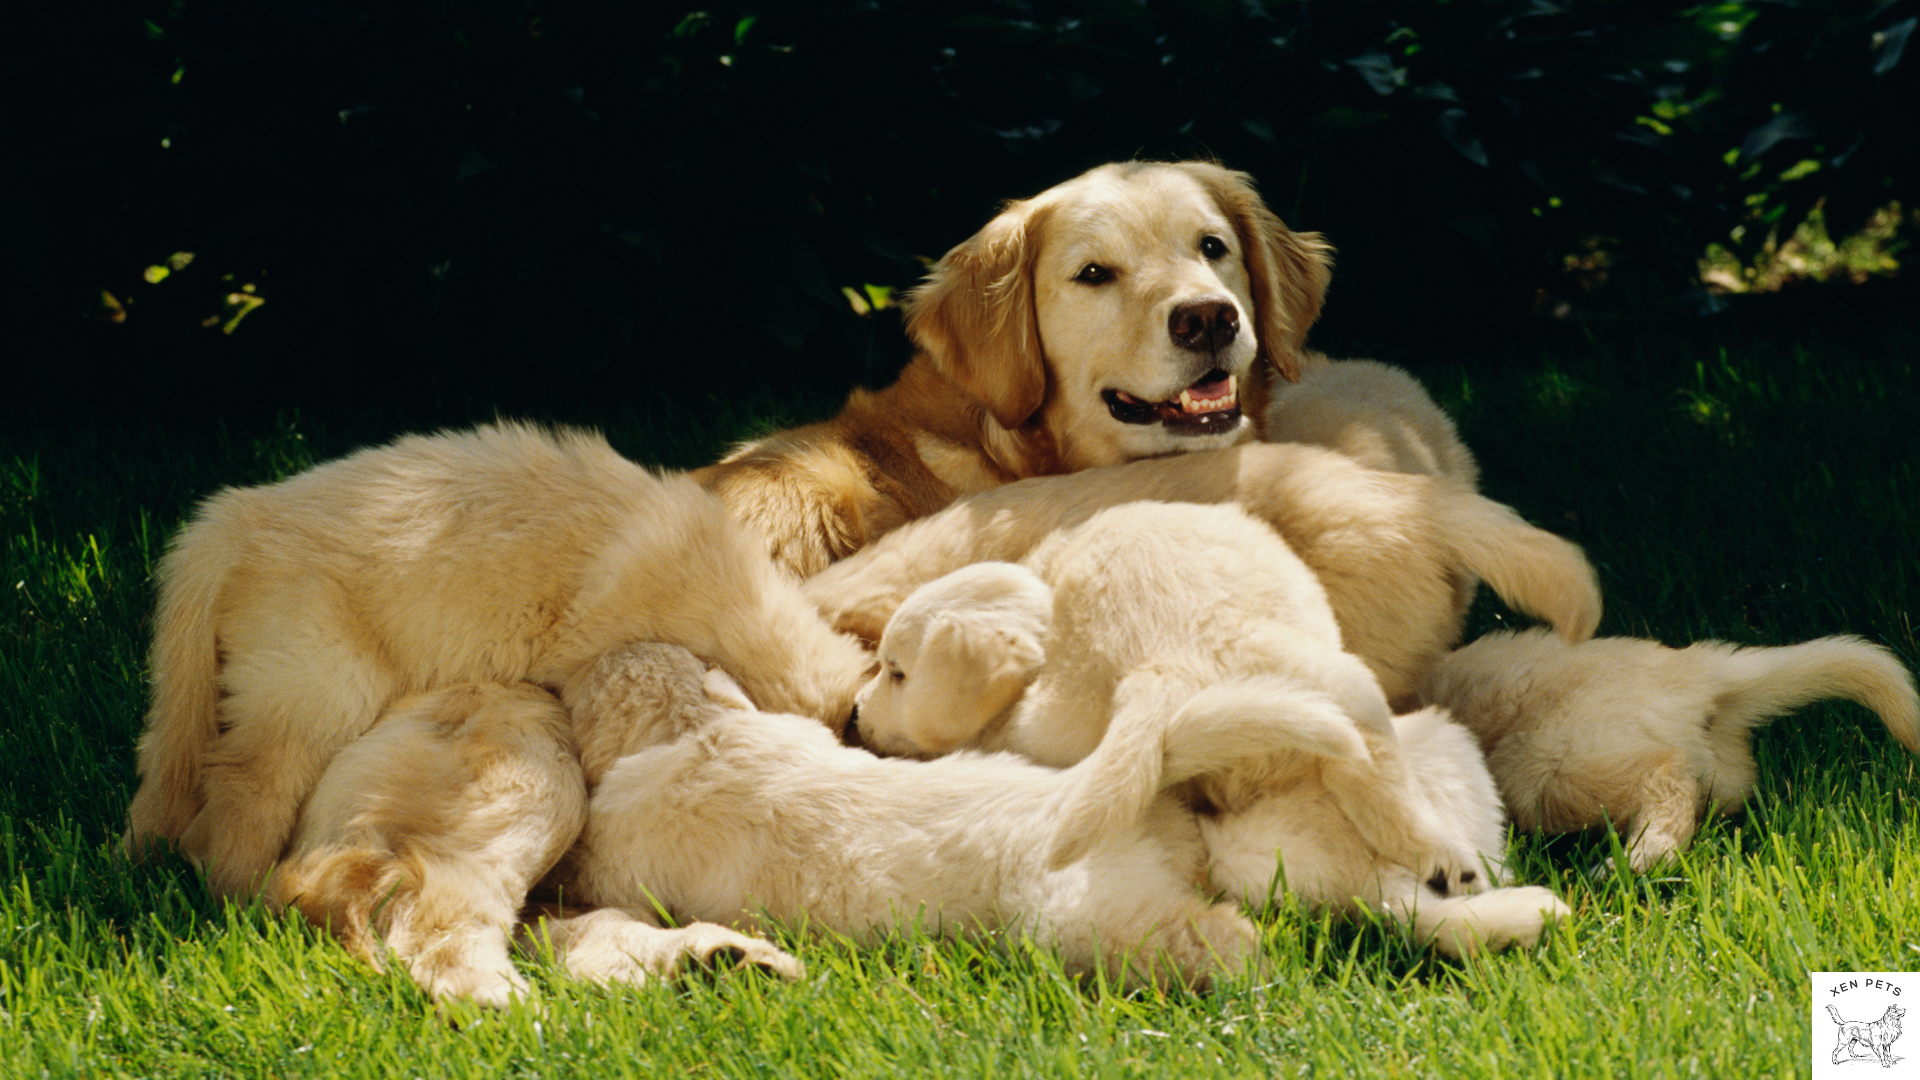 Golden Retriever nursing puppies giving them Vitamin K